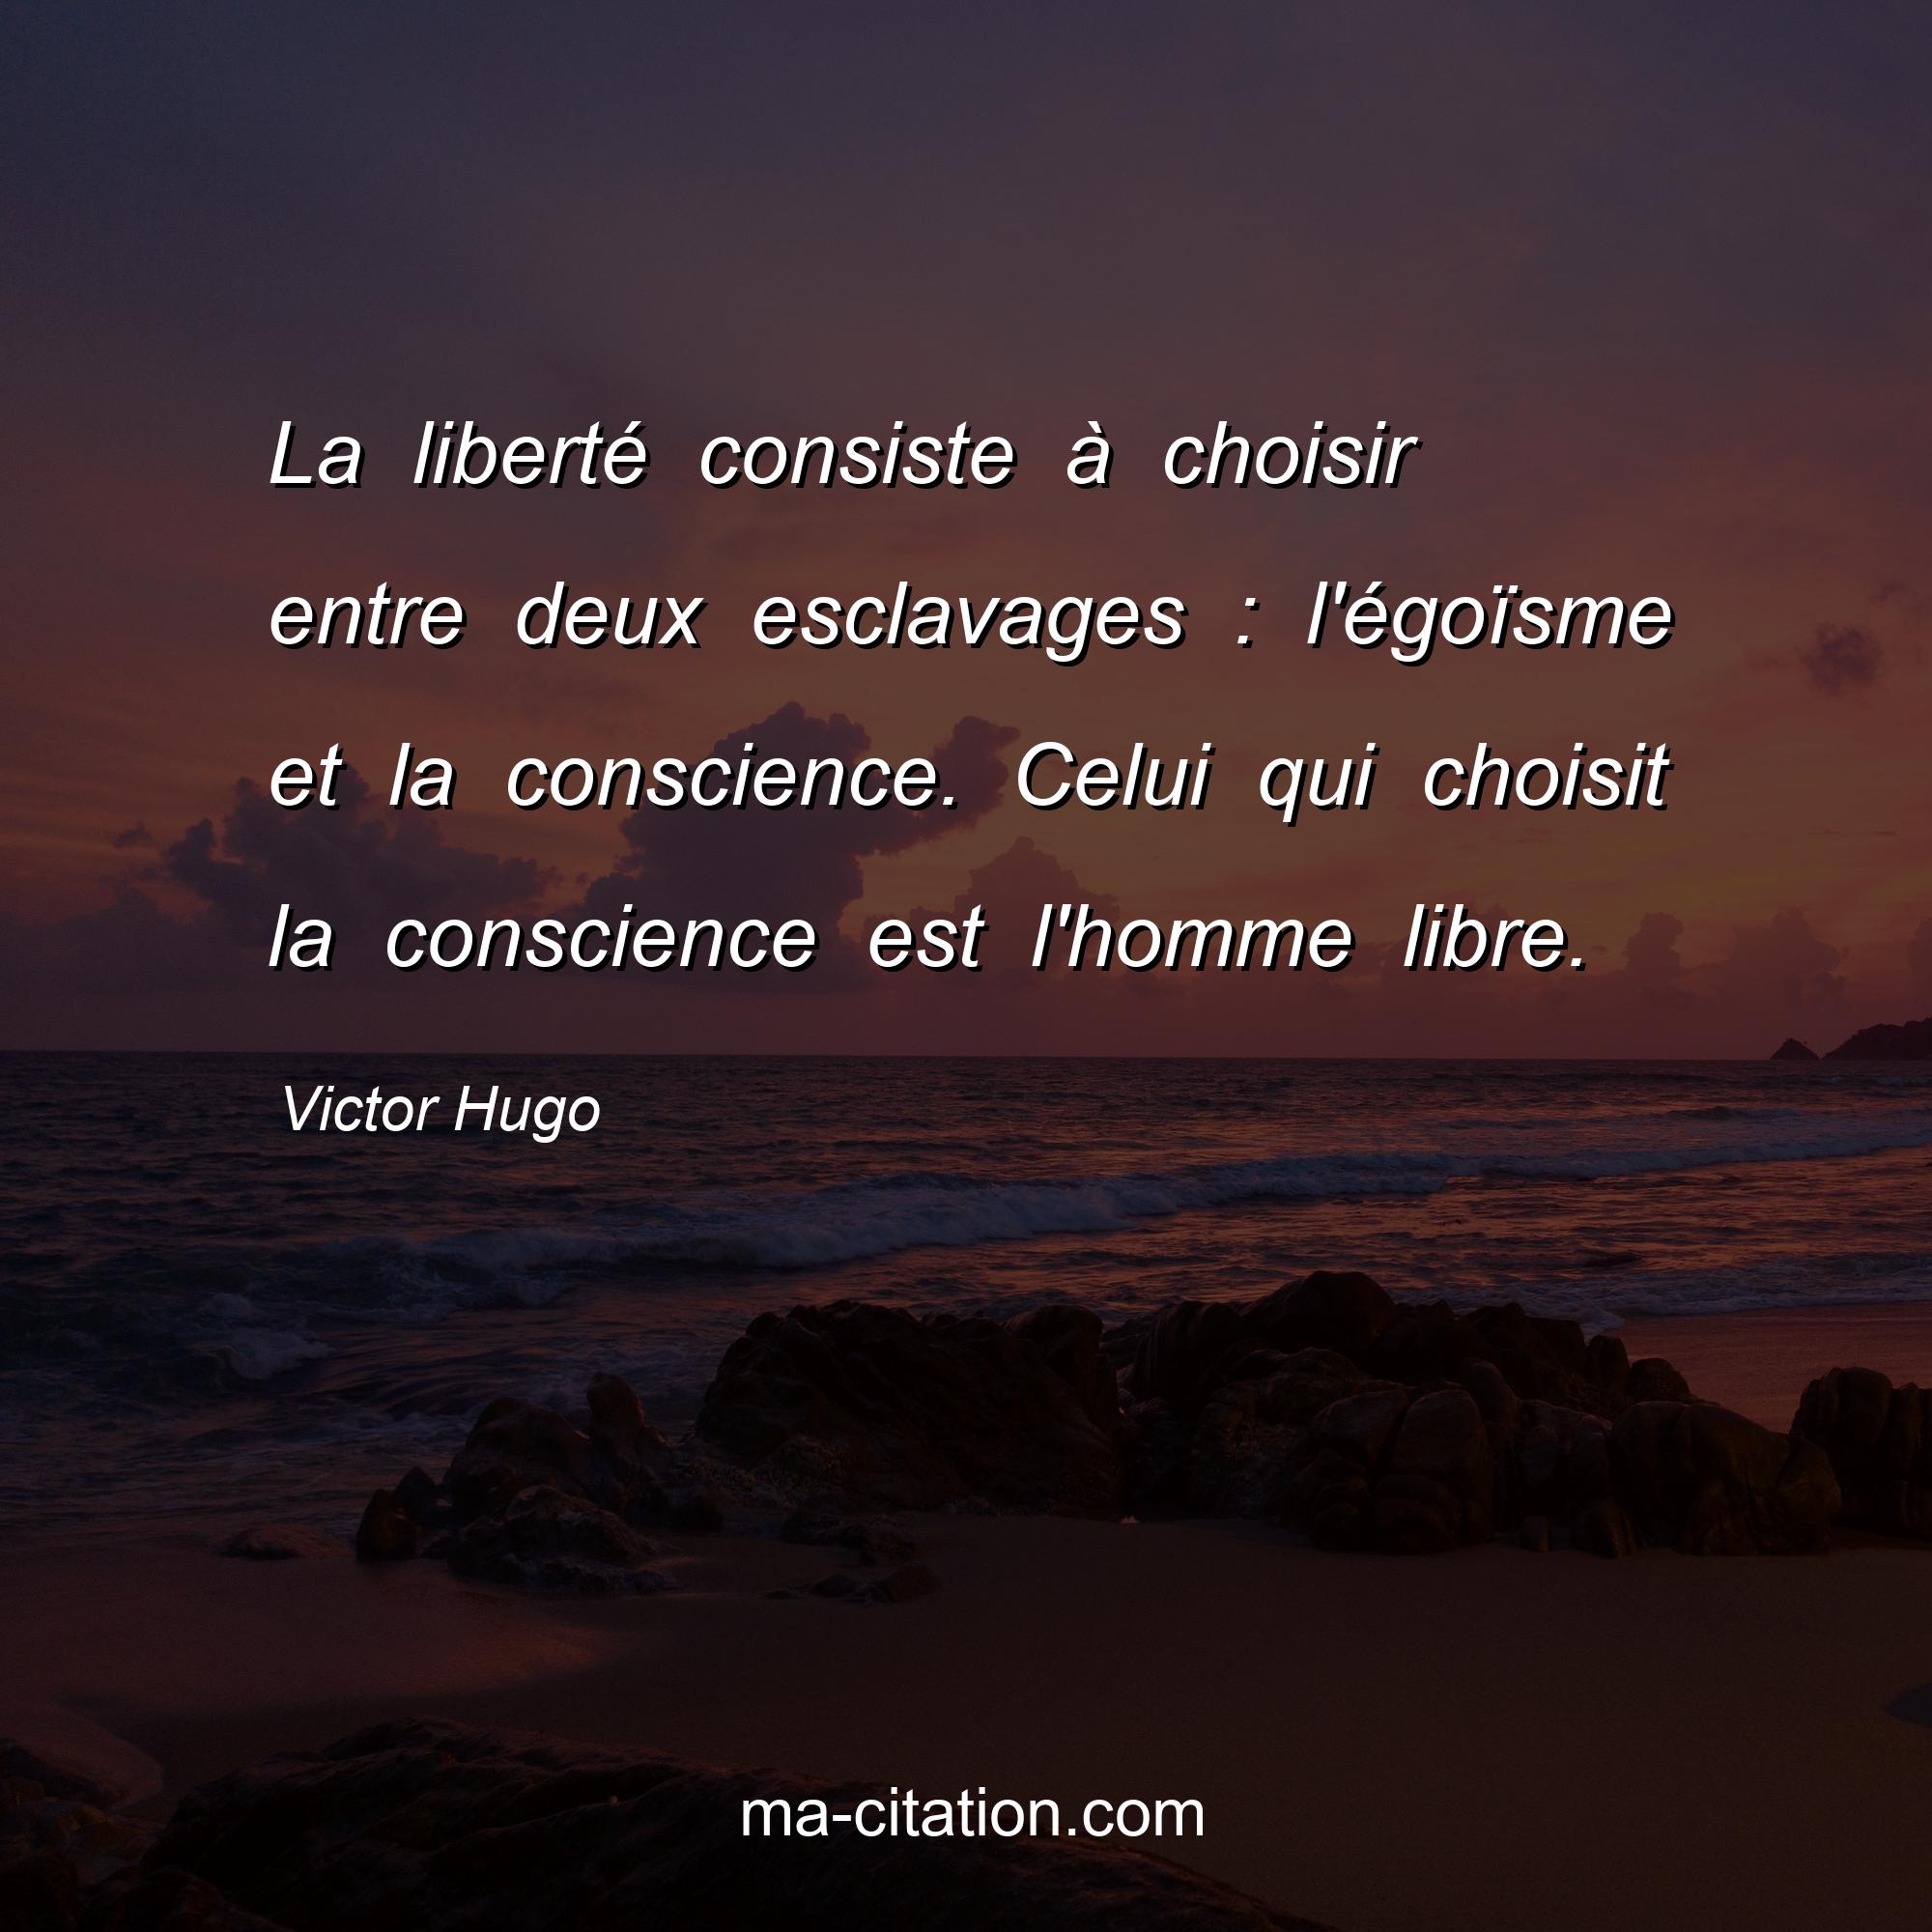 Victor Hugo : La liberté consiste à choisir entre deux esclavages : l'égoïsme et la conscience. Celui qui choisit la conscience est l'homme libre.